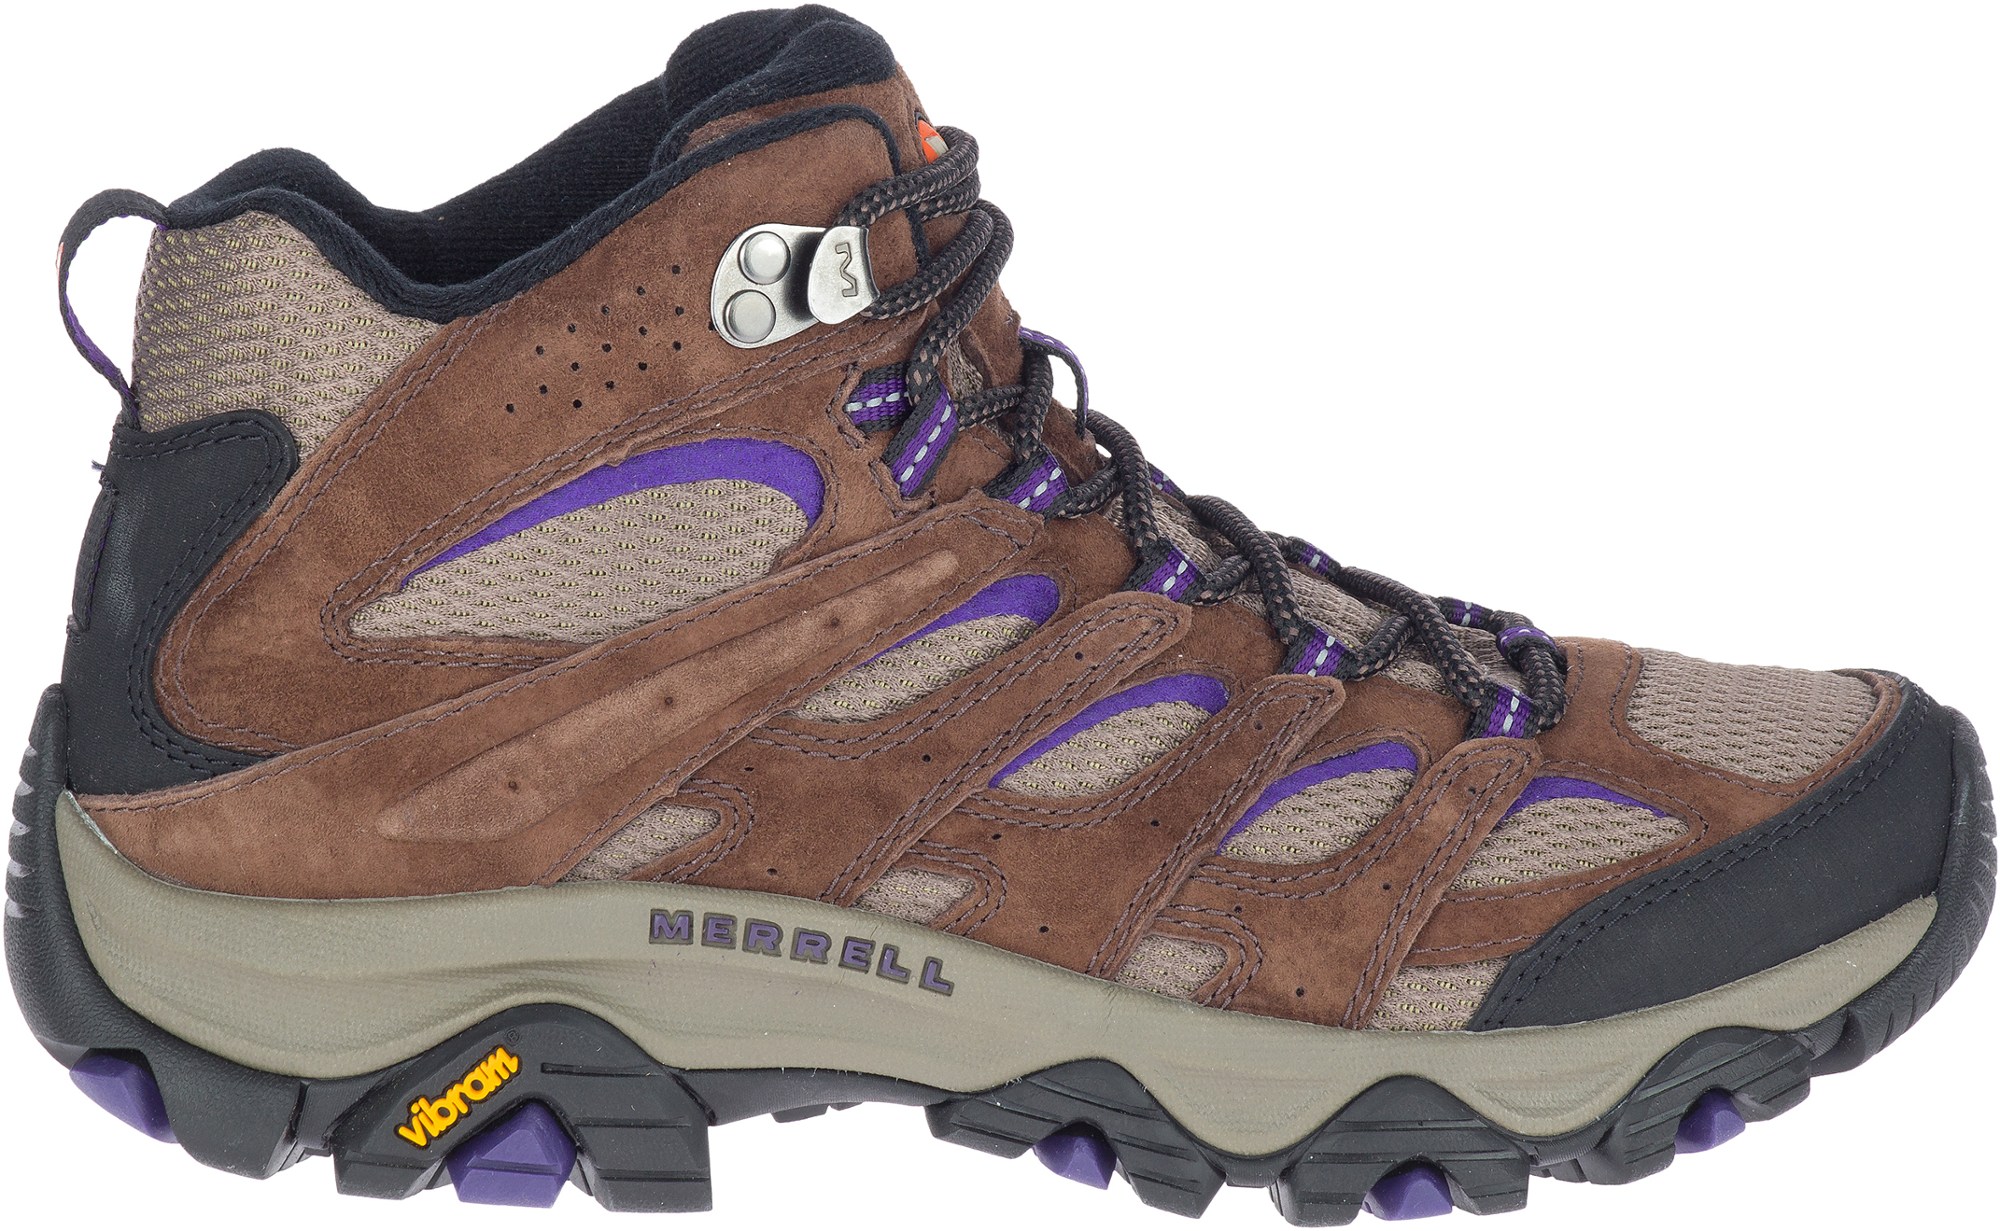 Походные ботинки Moab 3 Mid — женские Merrell, коричневый